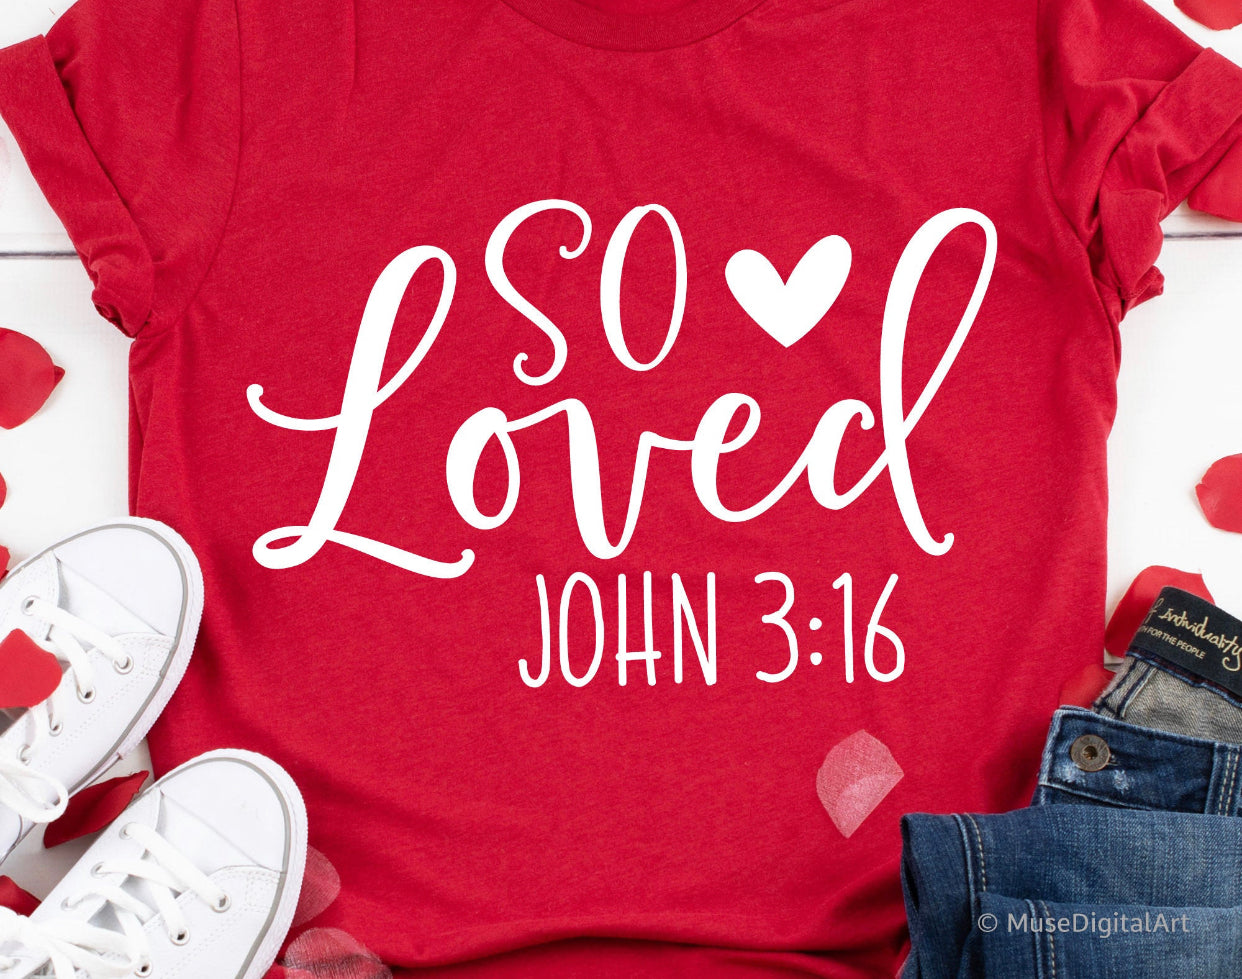 So Loved (John3:16)